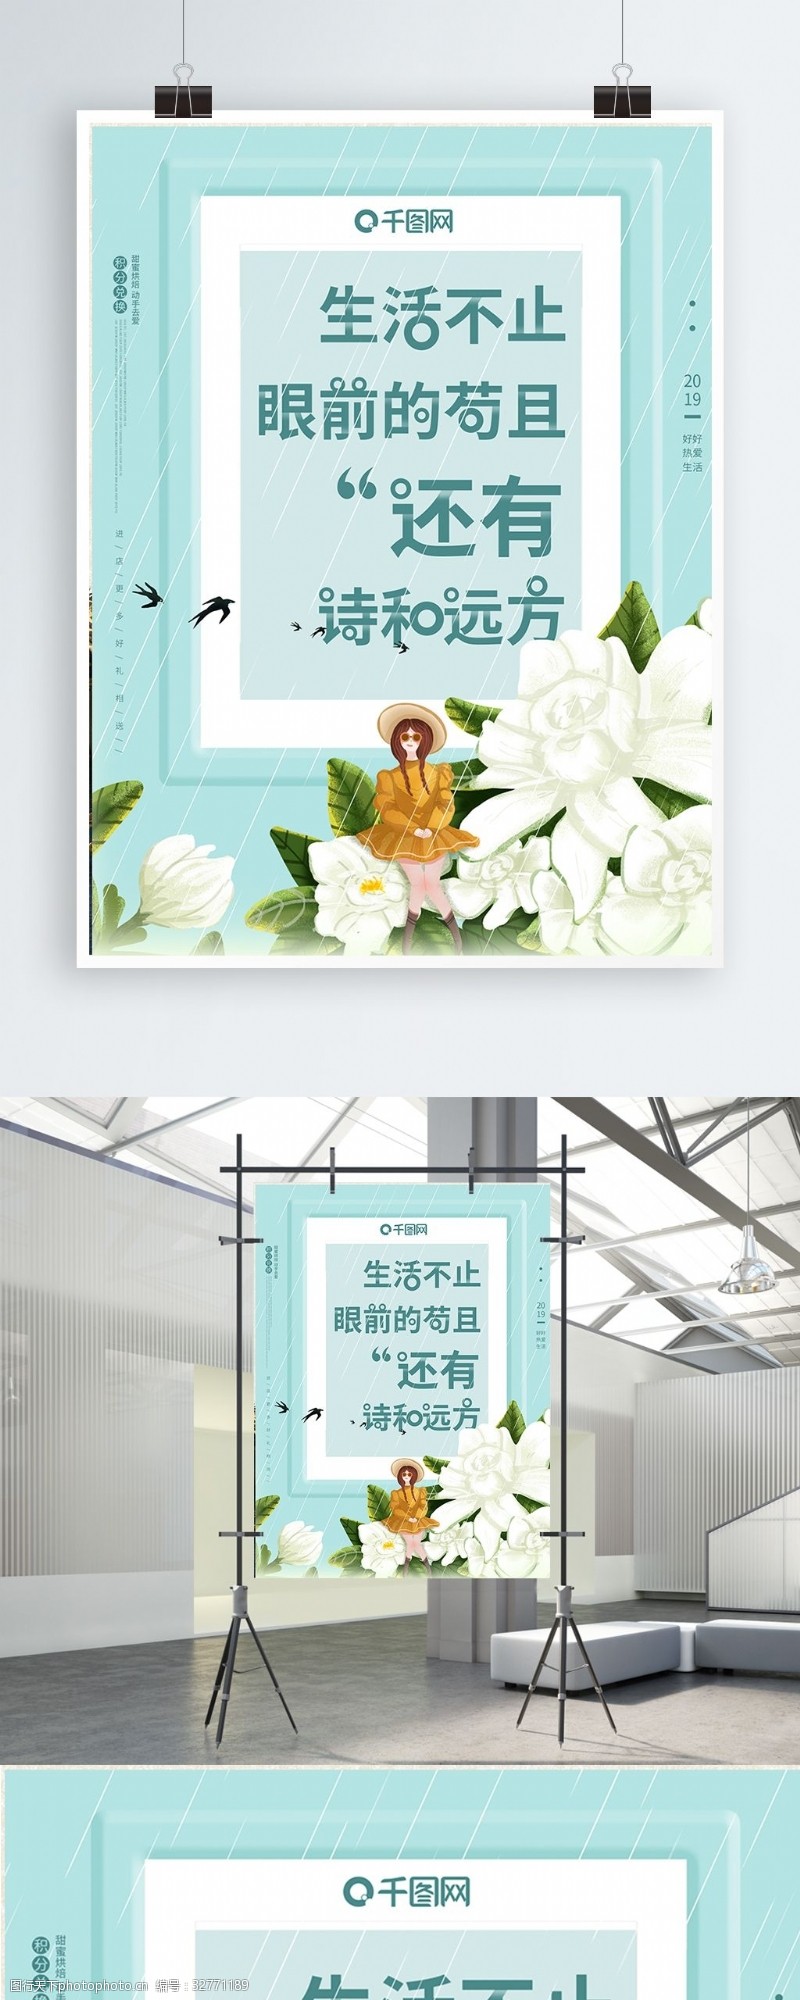 高晓松生活励志文宣诗和远方小清新商业微商海报